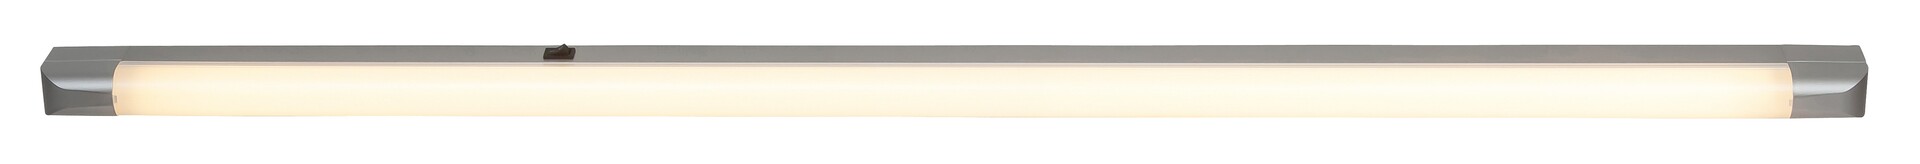 Arbeitsleuchte Band light 2309, G13, 36W, 2700K, 3350lm, Metall, silber, warmweiß, 128cm